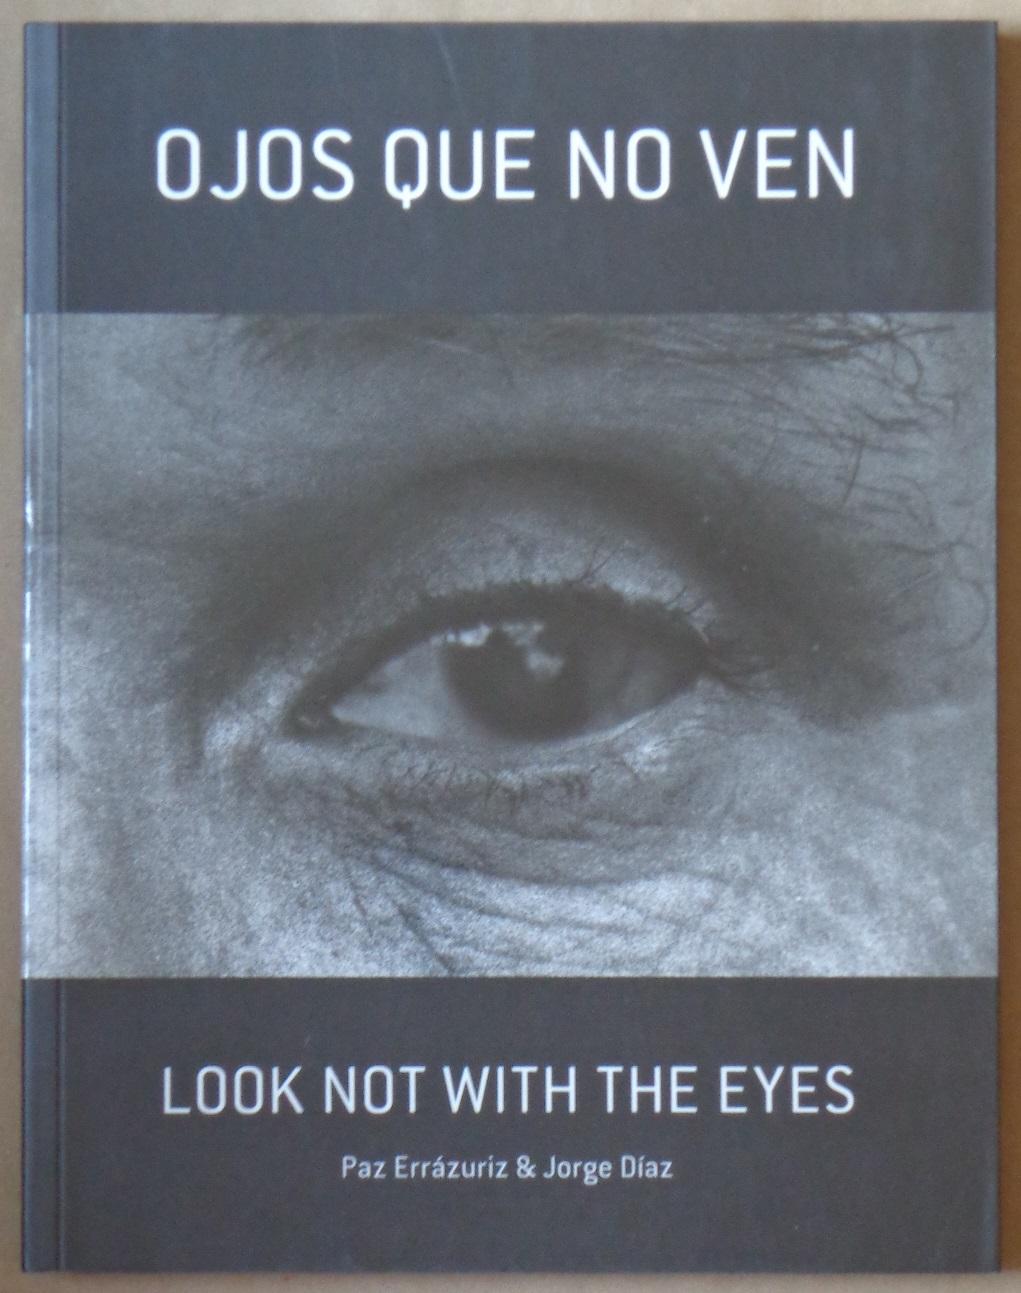 Ojos que no ven - Paz Errázuriz, Jorge Diaz